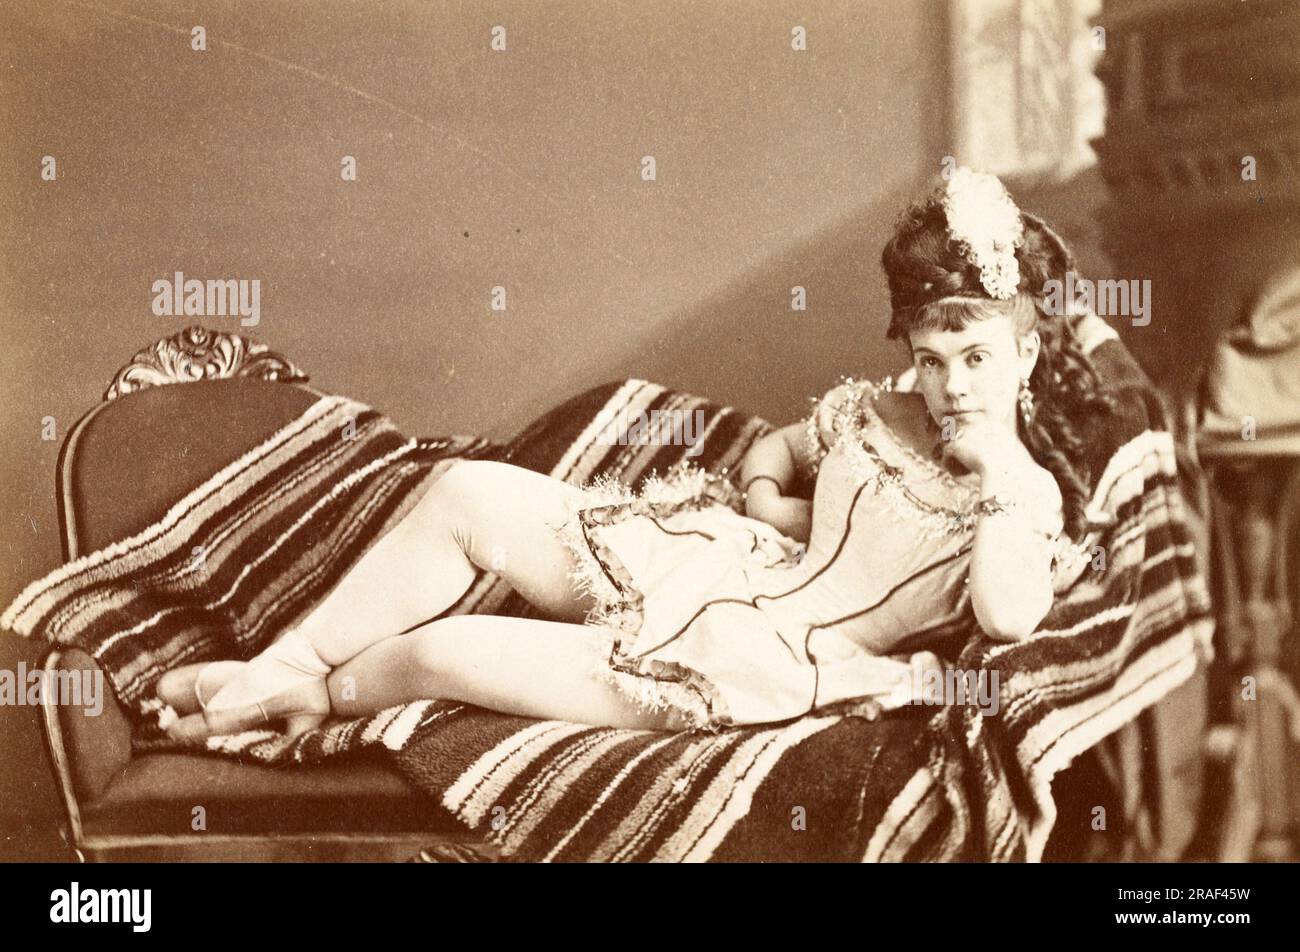 Lucy Clinetop, Foto von Jeremiah Gurney, um 1870, Historisch, digitale Restaurierte Reproduktion von einer Vorlage aus dem 19. Jahrhundert / Lucy Clinetop, Foto von Jeremiah Gurney, ca. 1870, historische, digital restaurierte Reproduktion eines Originals aus dem 19. Jahrhundert Stockfoto